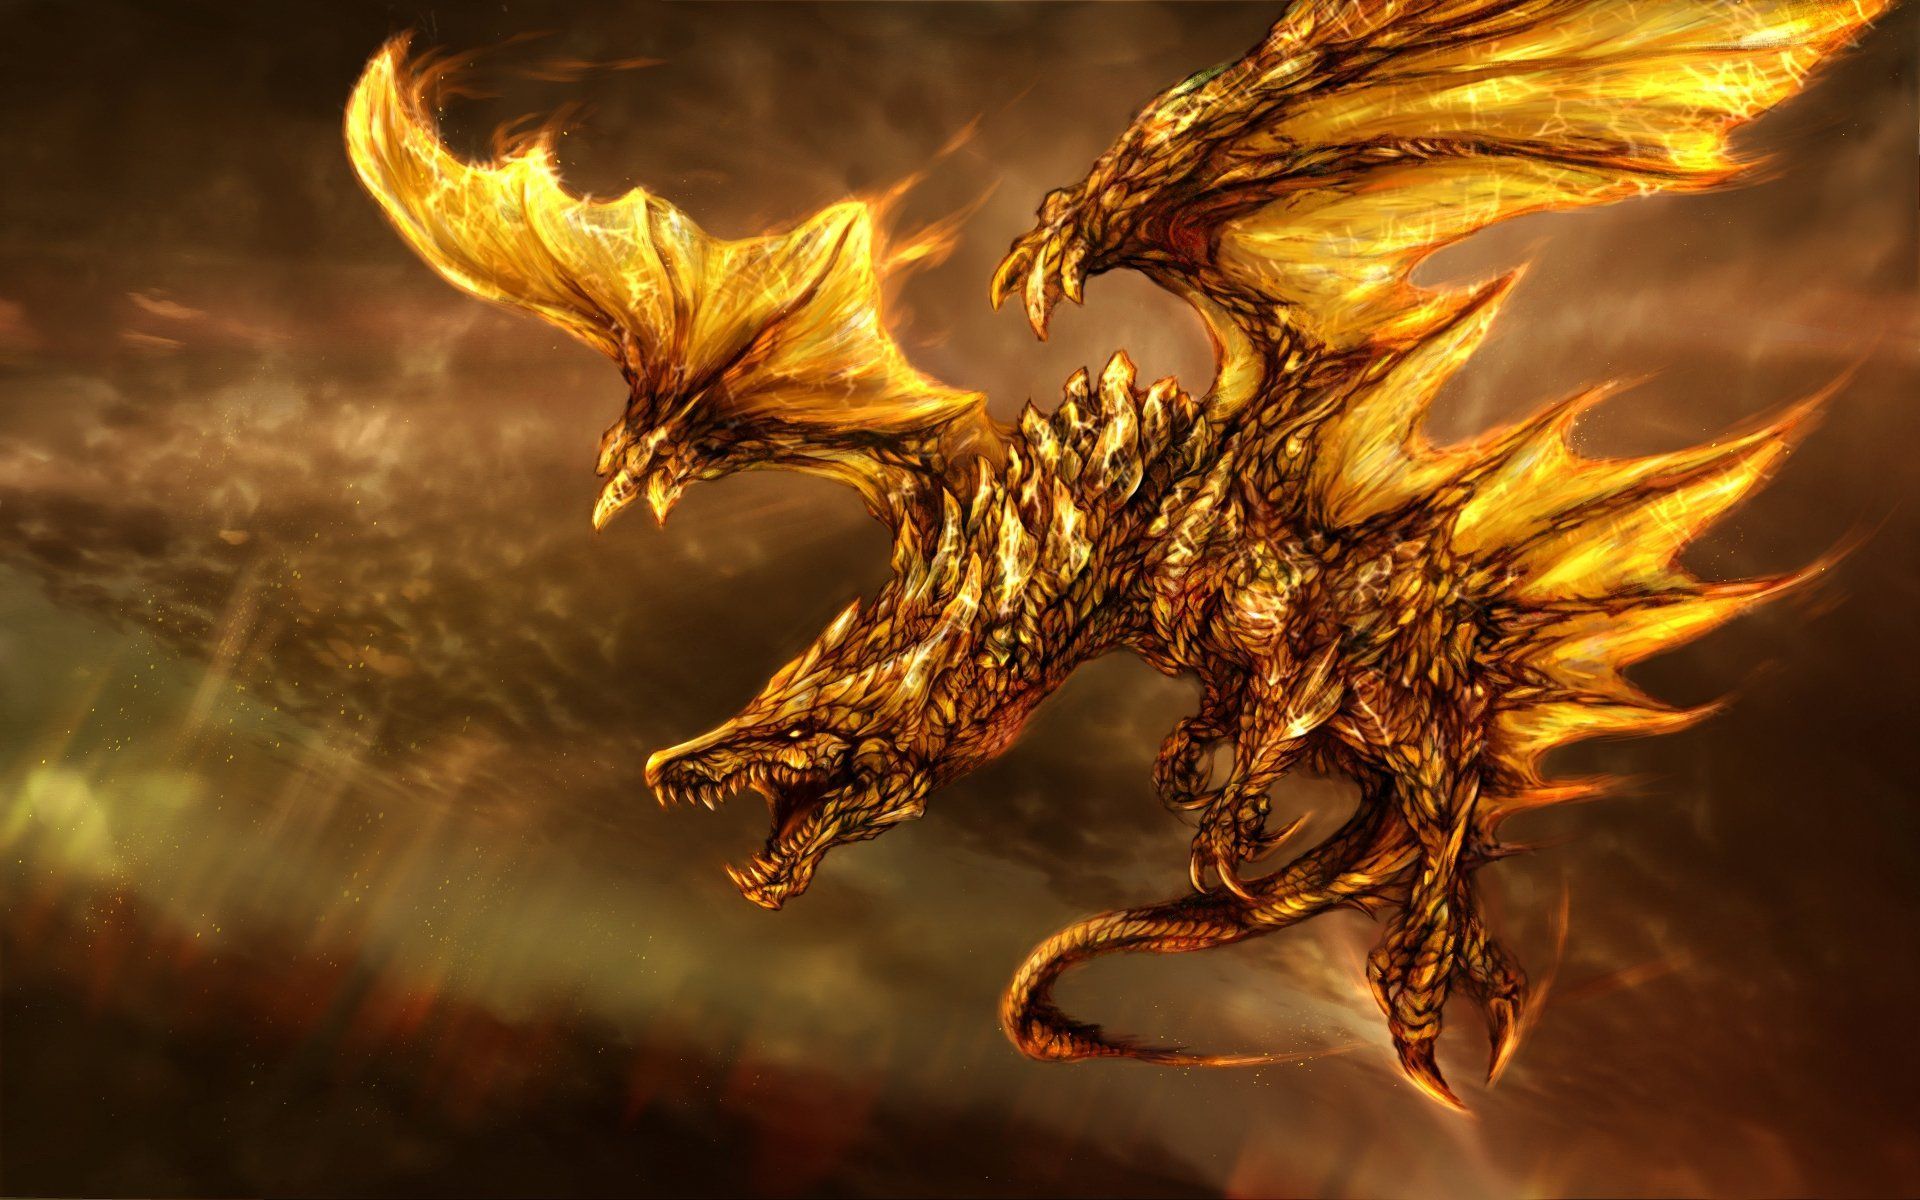 Dragon Images Download Free - KibrisPDR